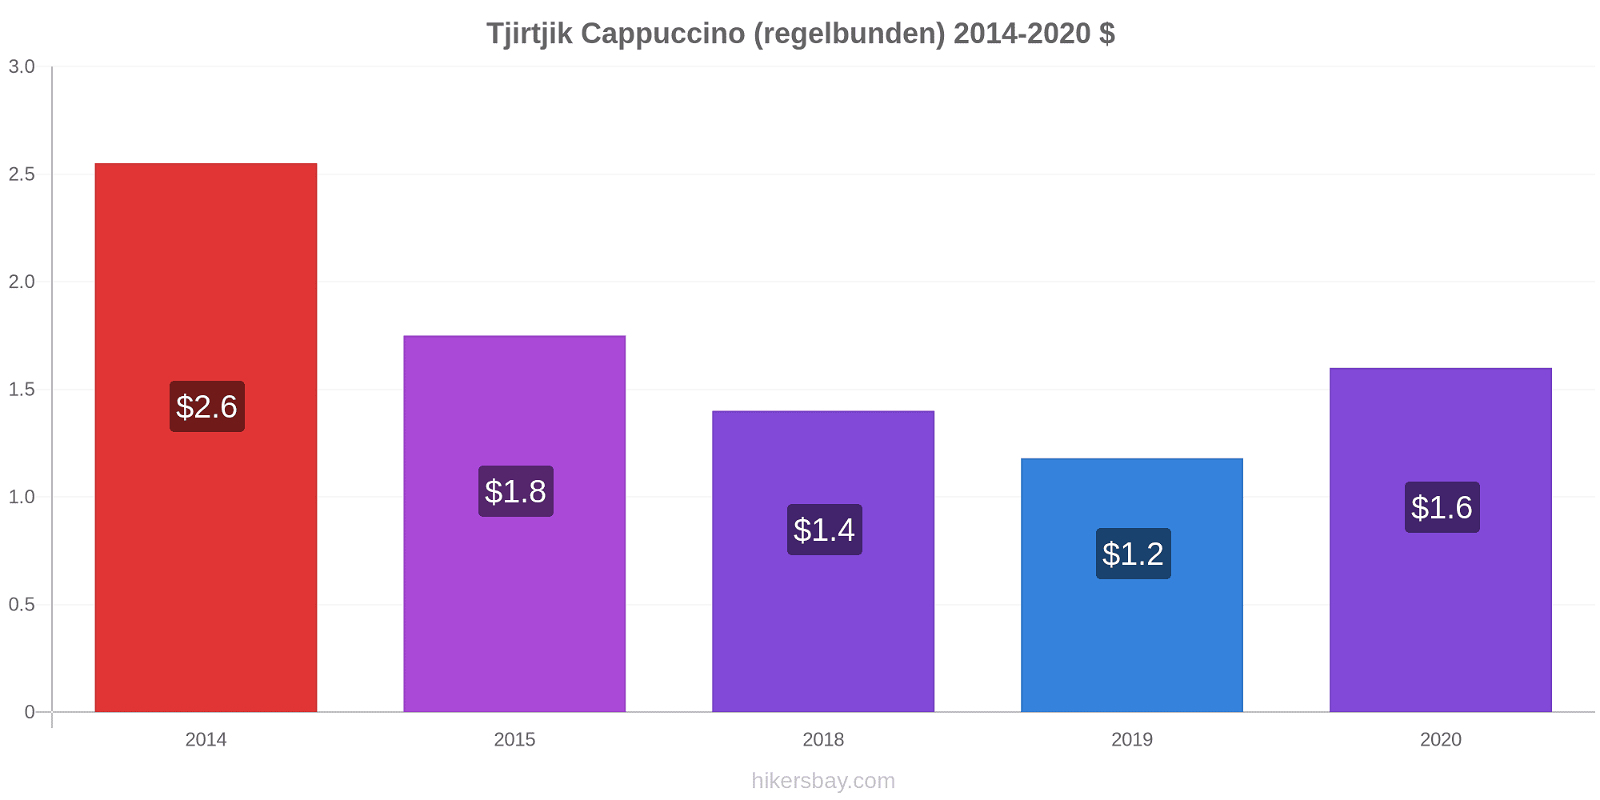 Tjirtjik prisförändringar Cappuccino (regelbunden) hikersbay.com